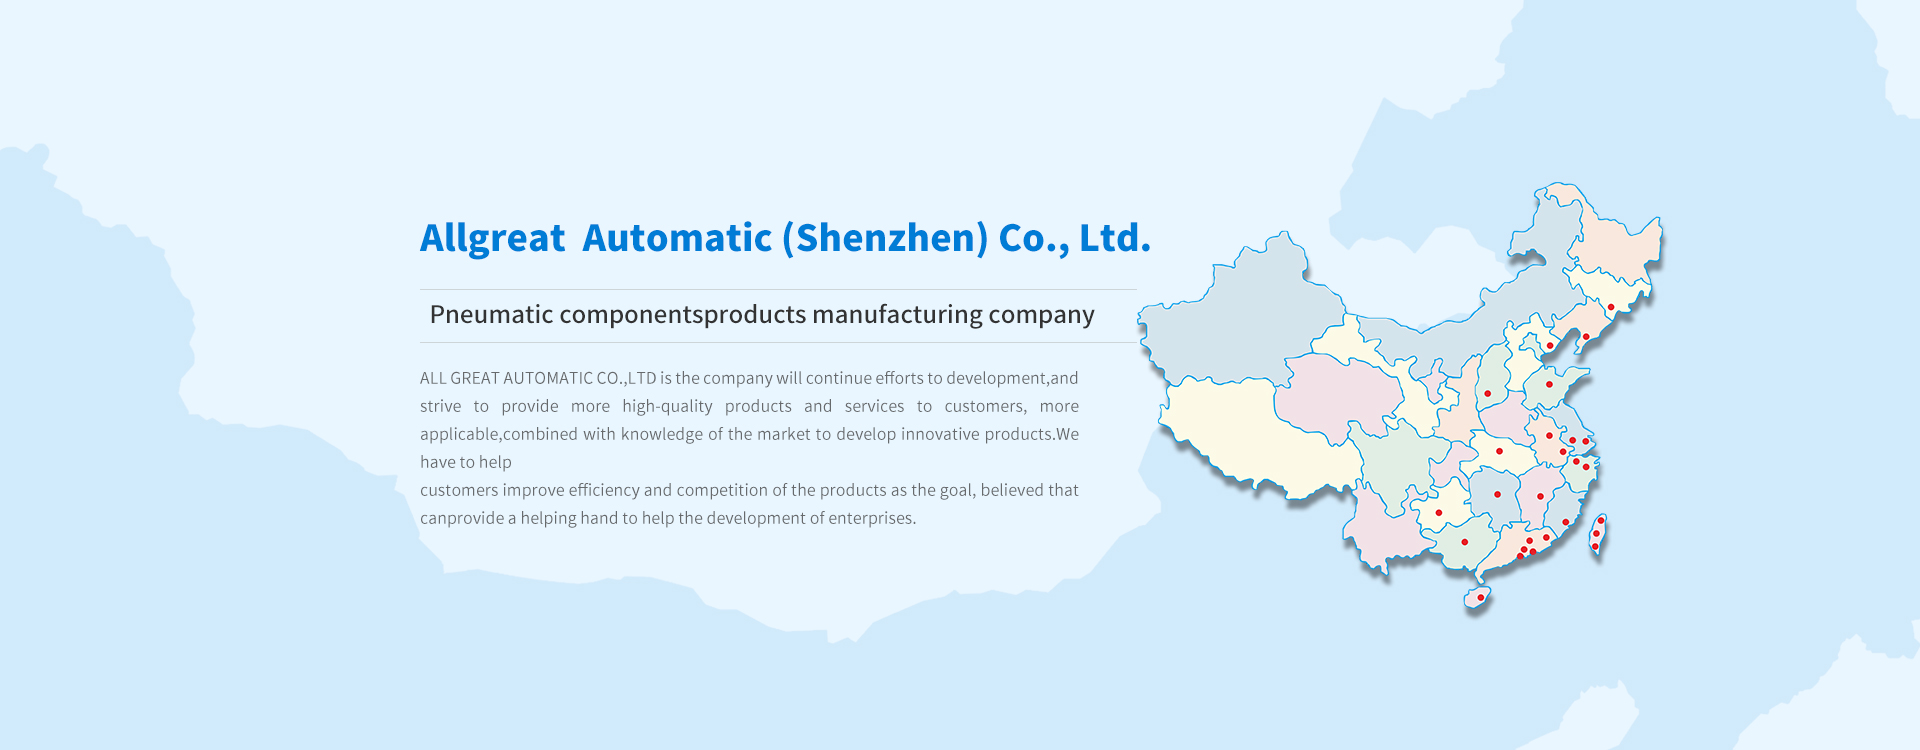 Shenzhen cylinder manufacturers, cylinder manufacturers